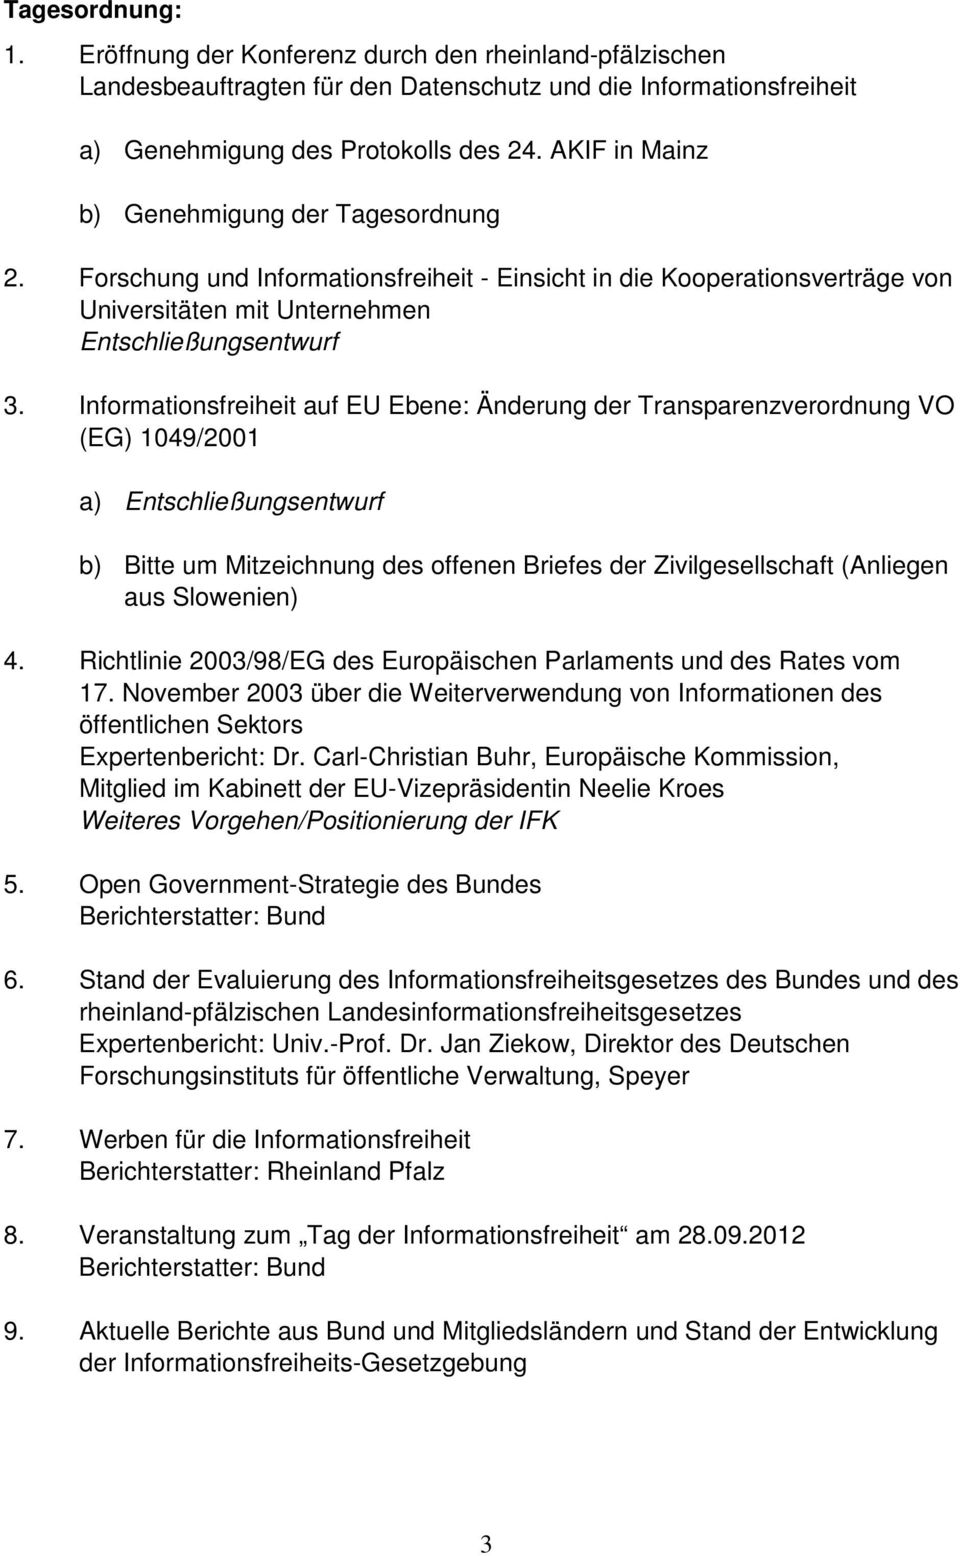 Informationsfreiheit auf EU Ebene: Änderung der Transparenzverordnung VO (EG) 1049/2001 a) Entschließungsentwurf b) Bitte um Mitzeichnung des offenen Briefes der Zivilgesellschaft (Anliegen aus